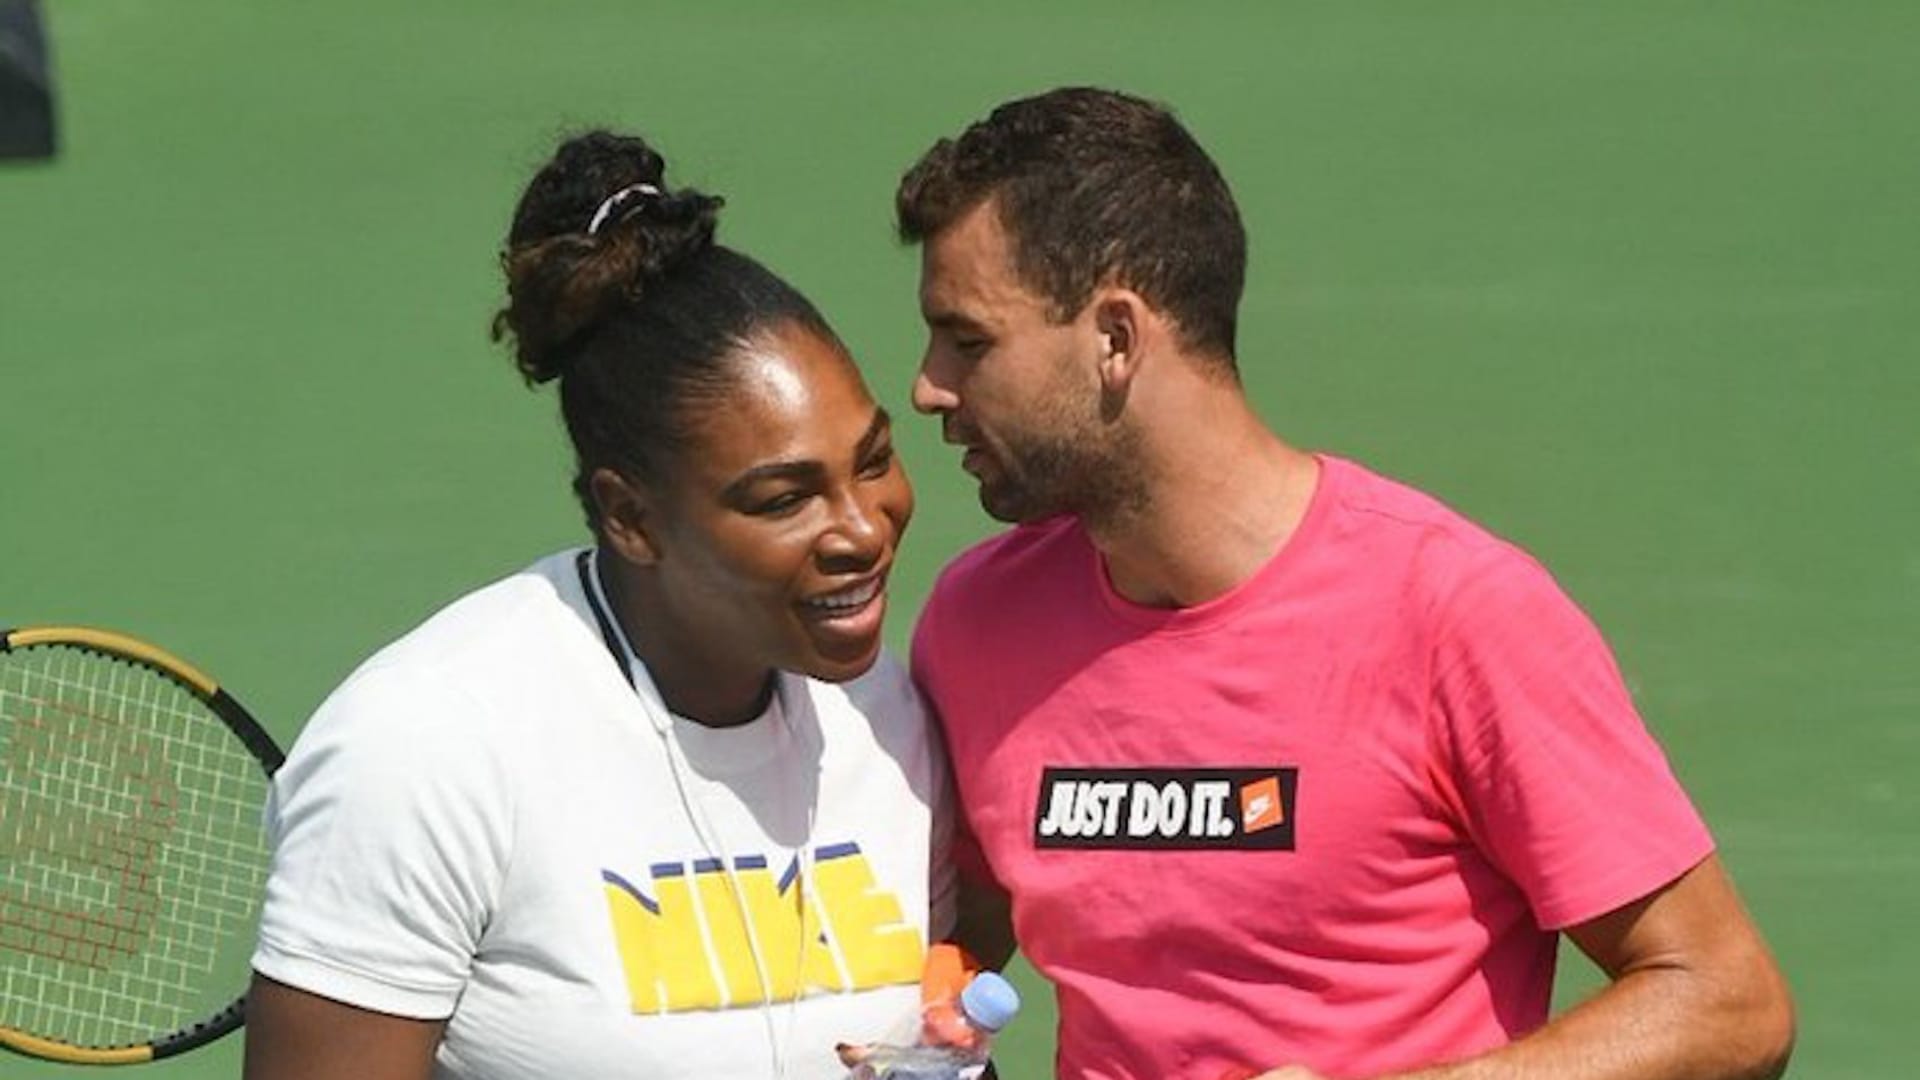 Serena harasses Dimitrov on Instagram Live